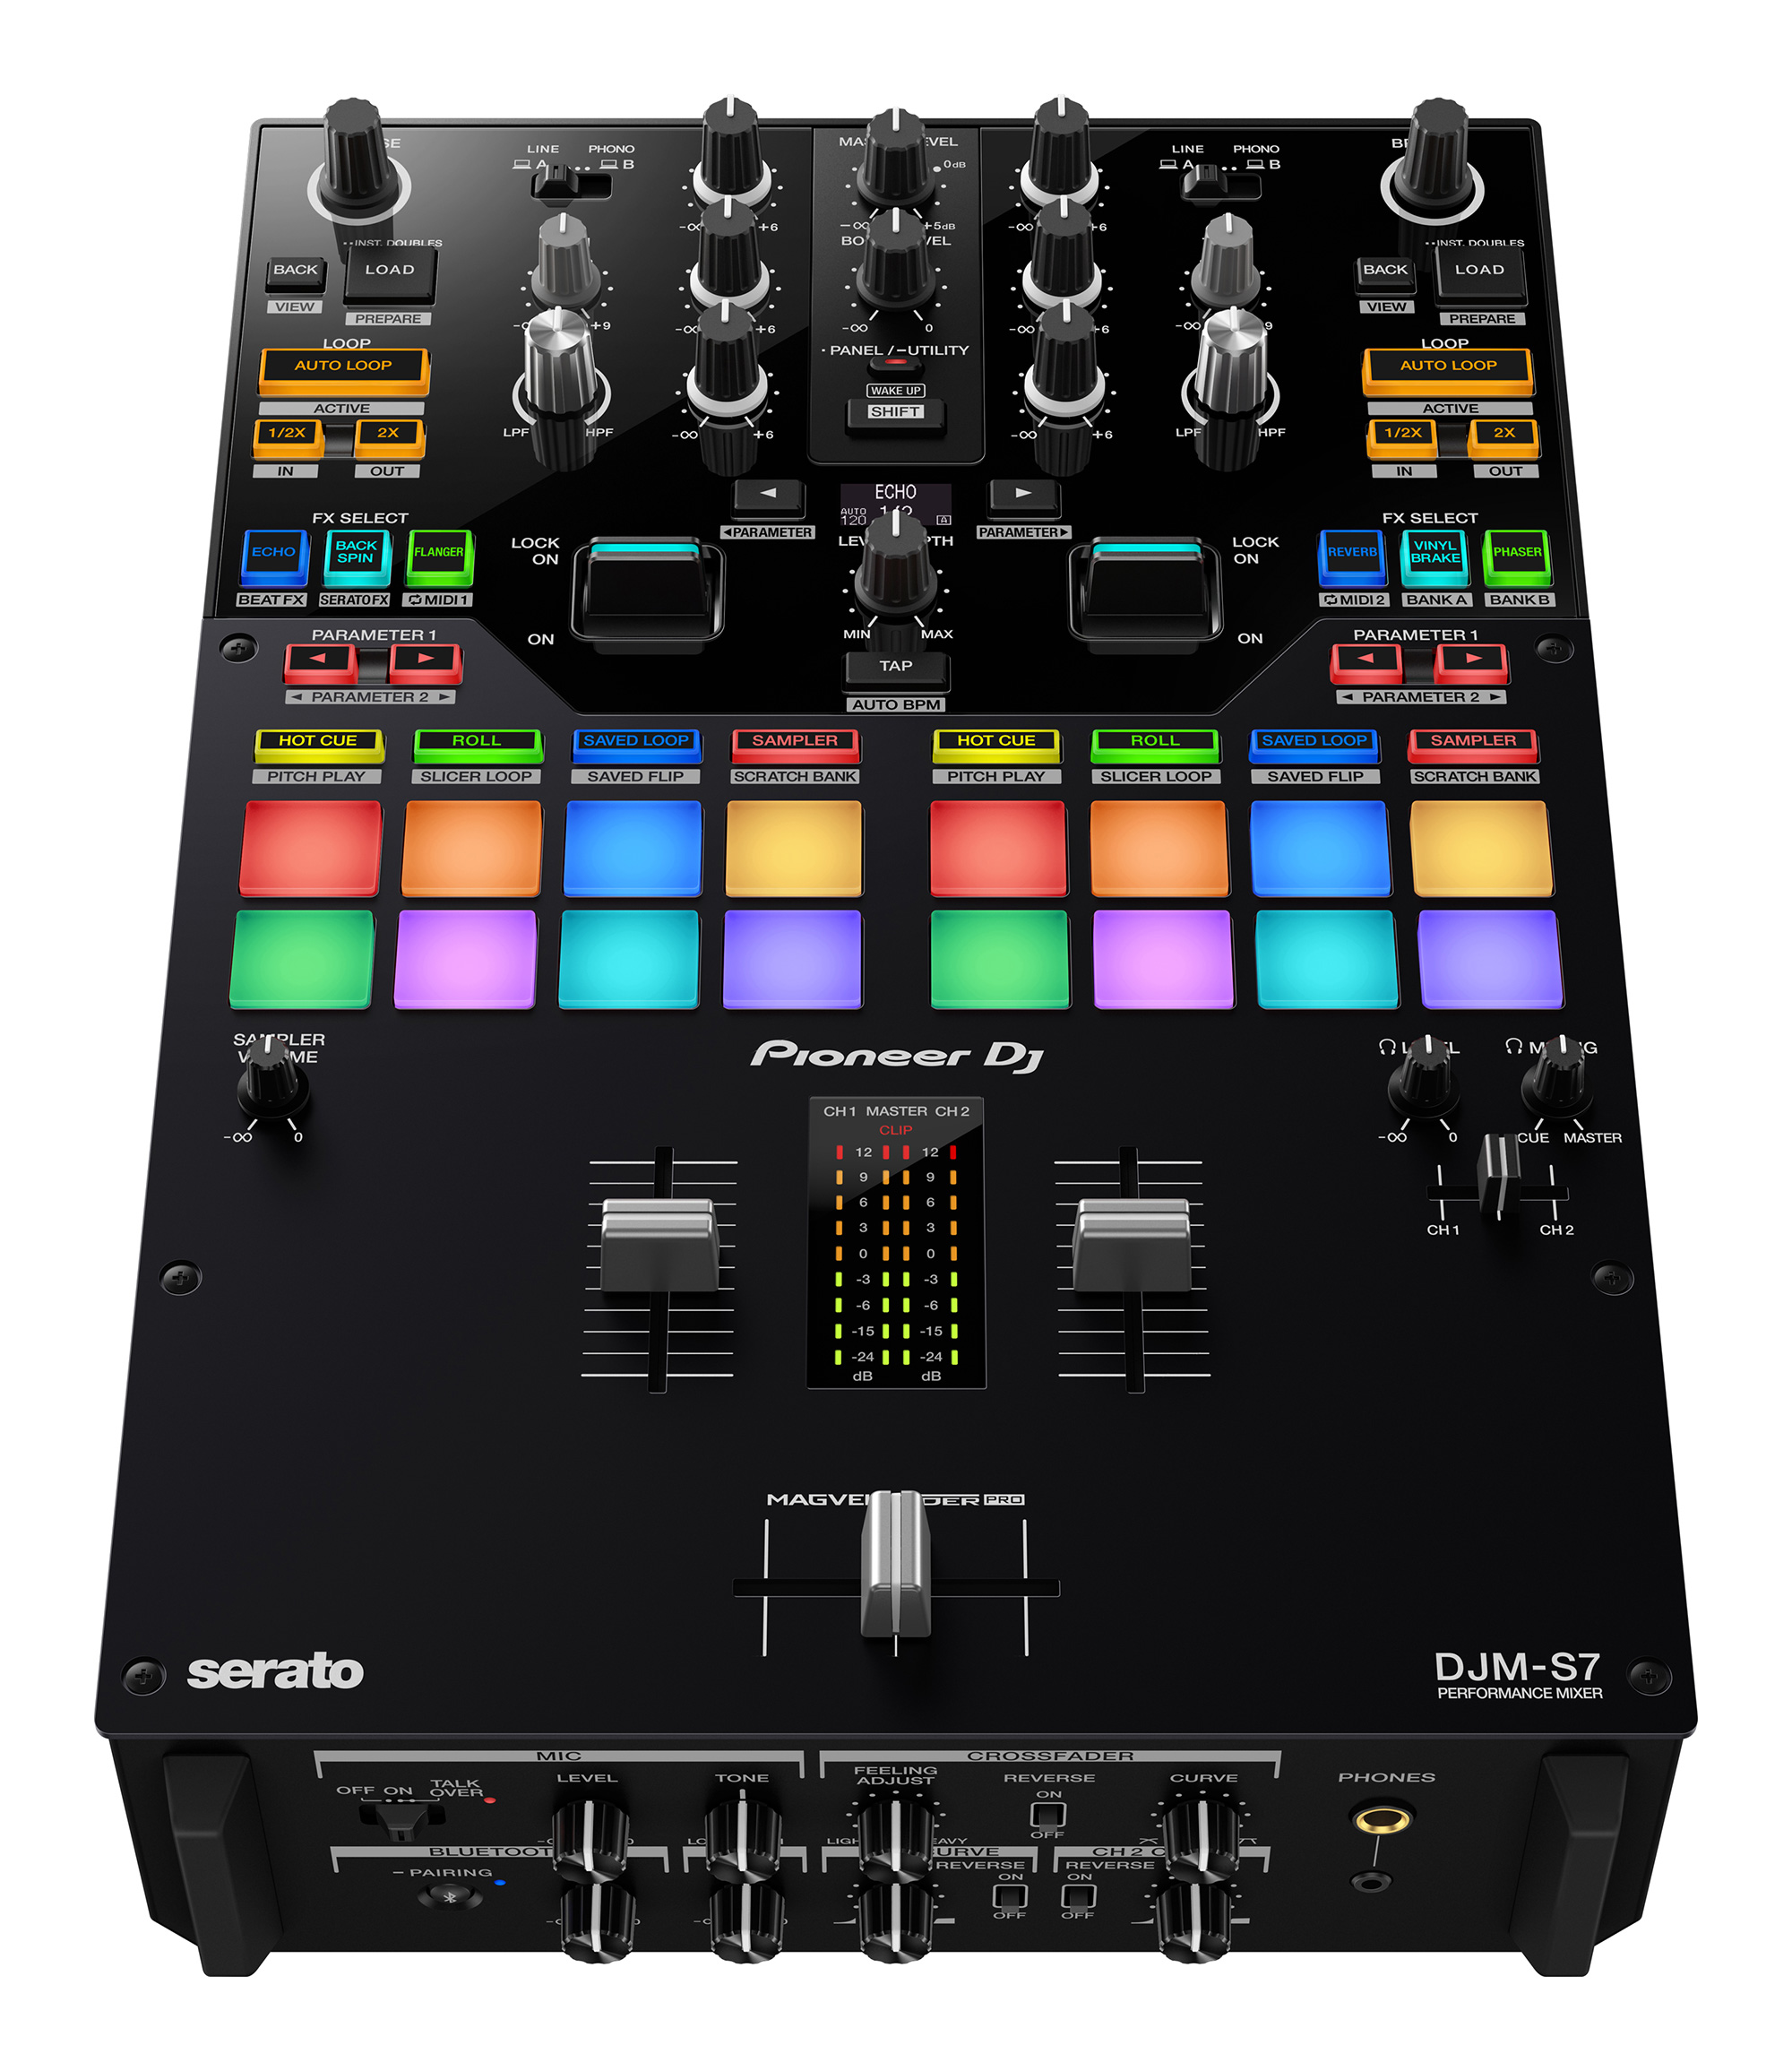 Nuevo mixer Pioneer DJM-S7 diseñado para el turntablism